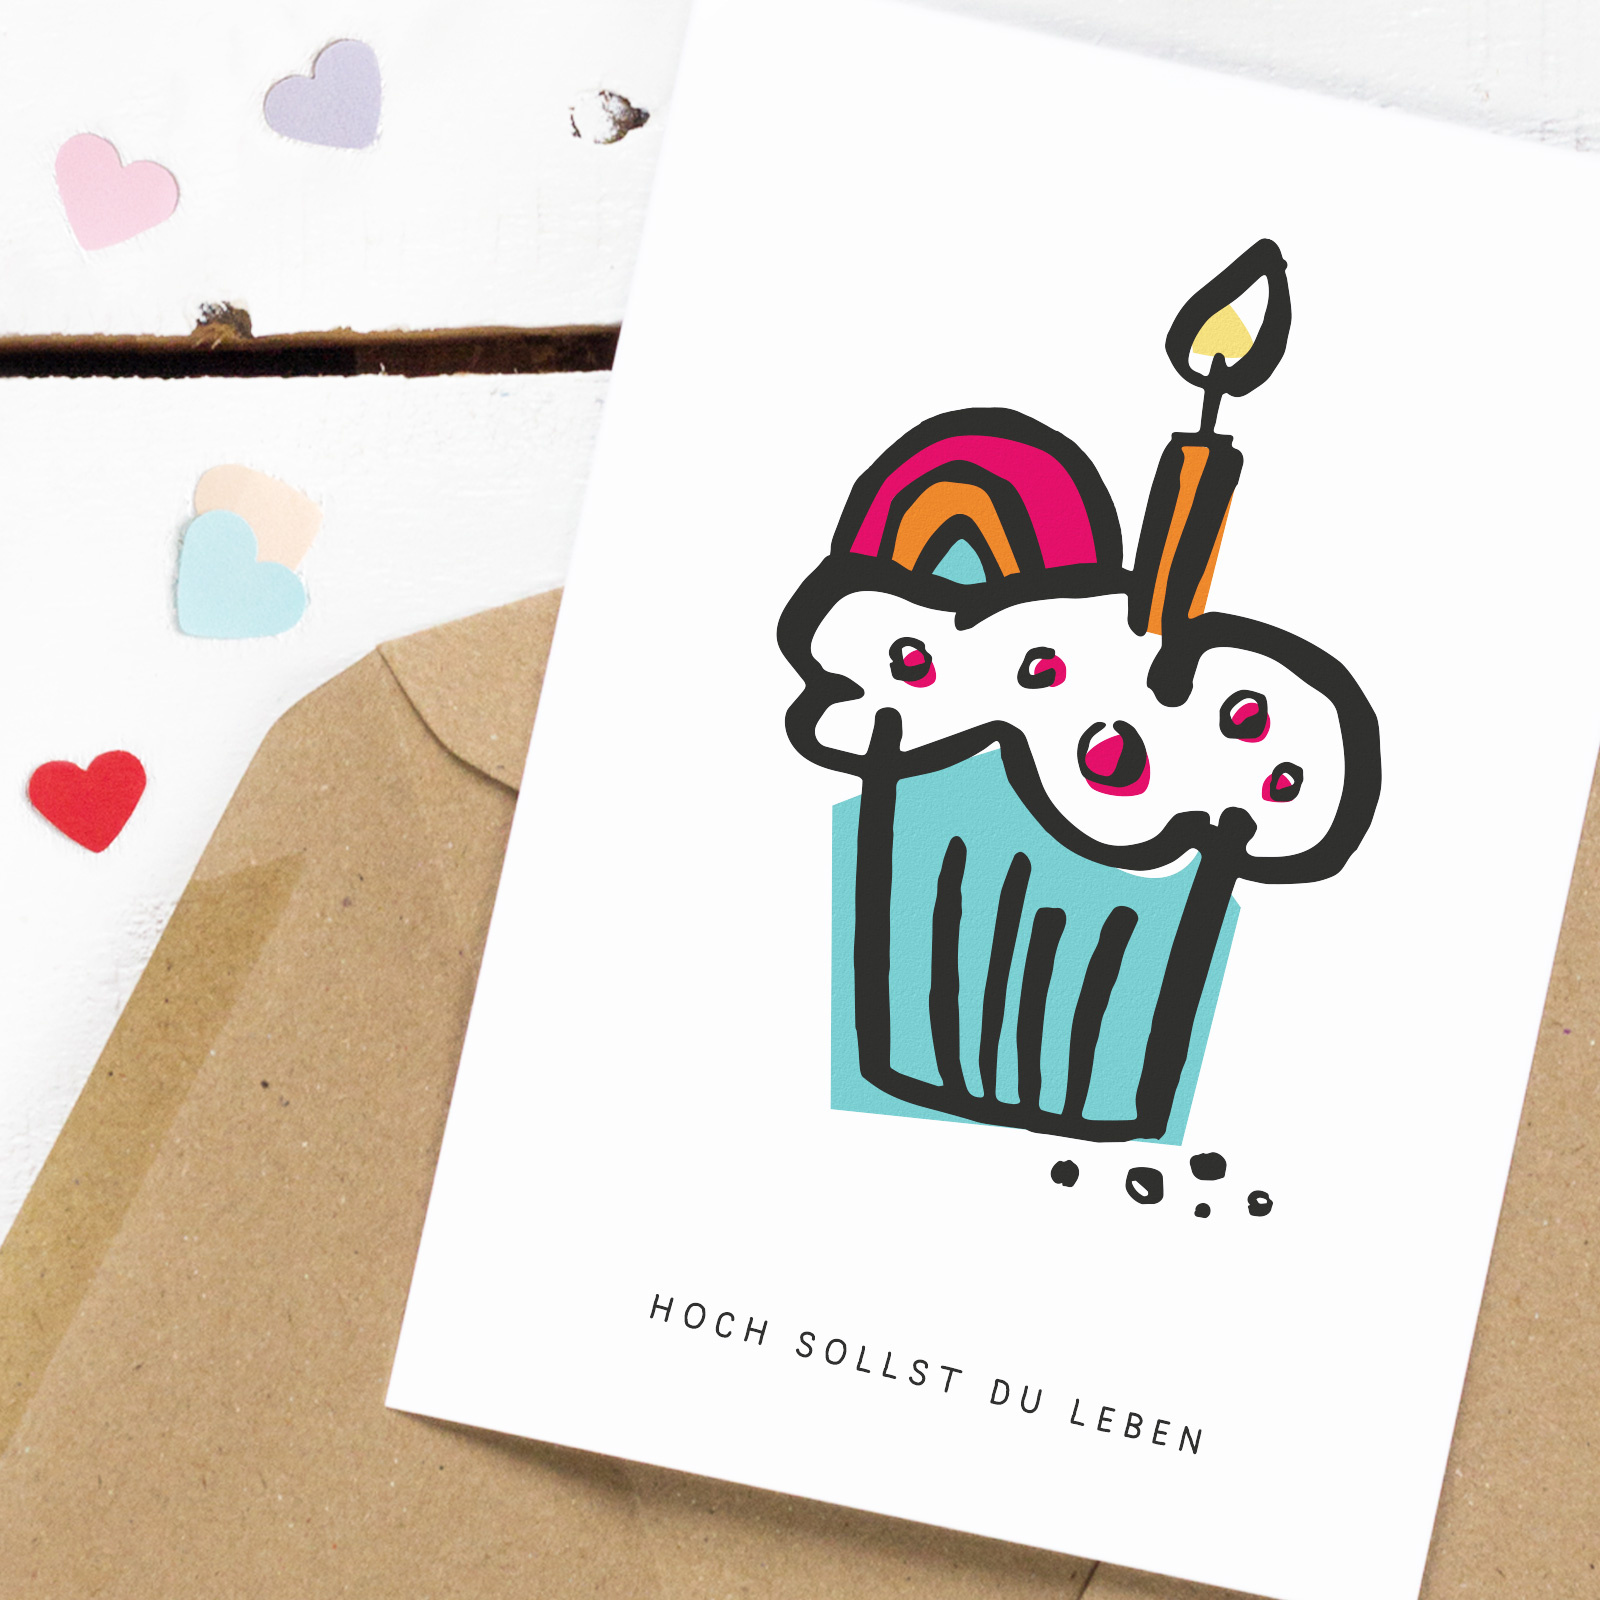 Postkarte mit Muffin, Regenbogendeko, Kerze und Spruch "hoch sollst du leben" darunter